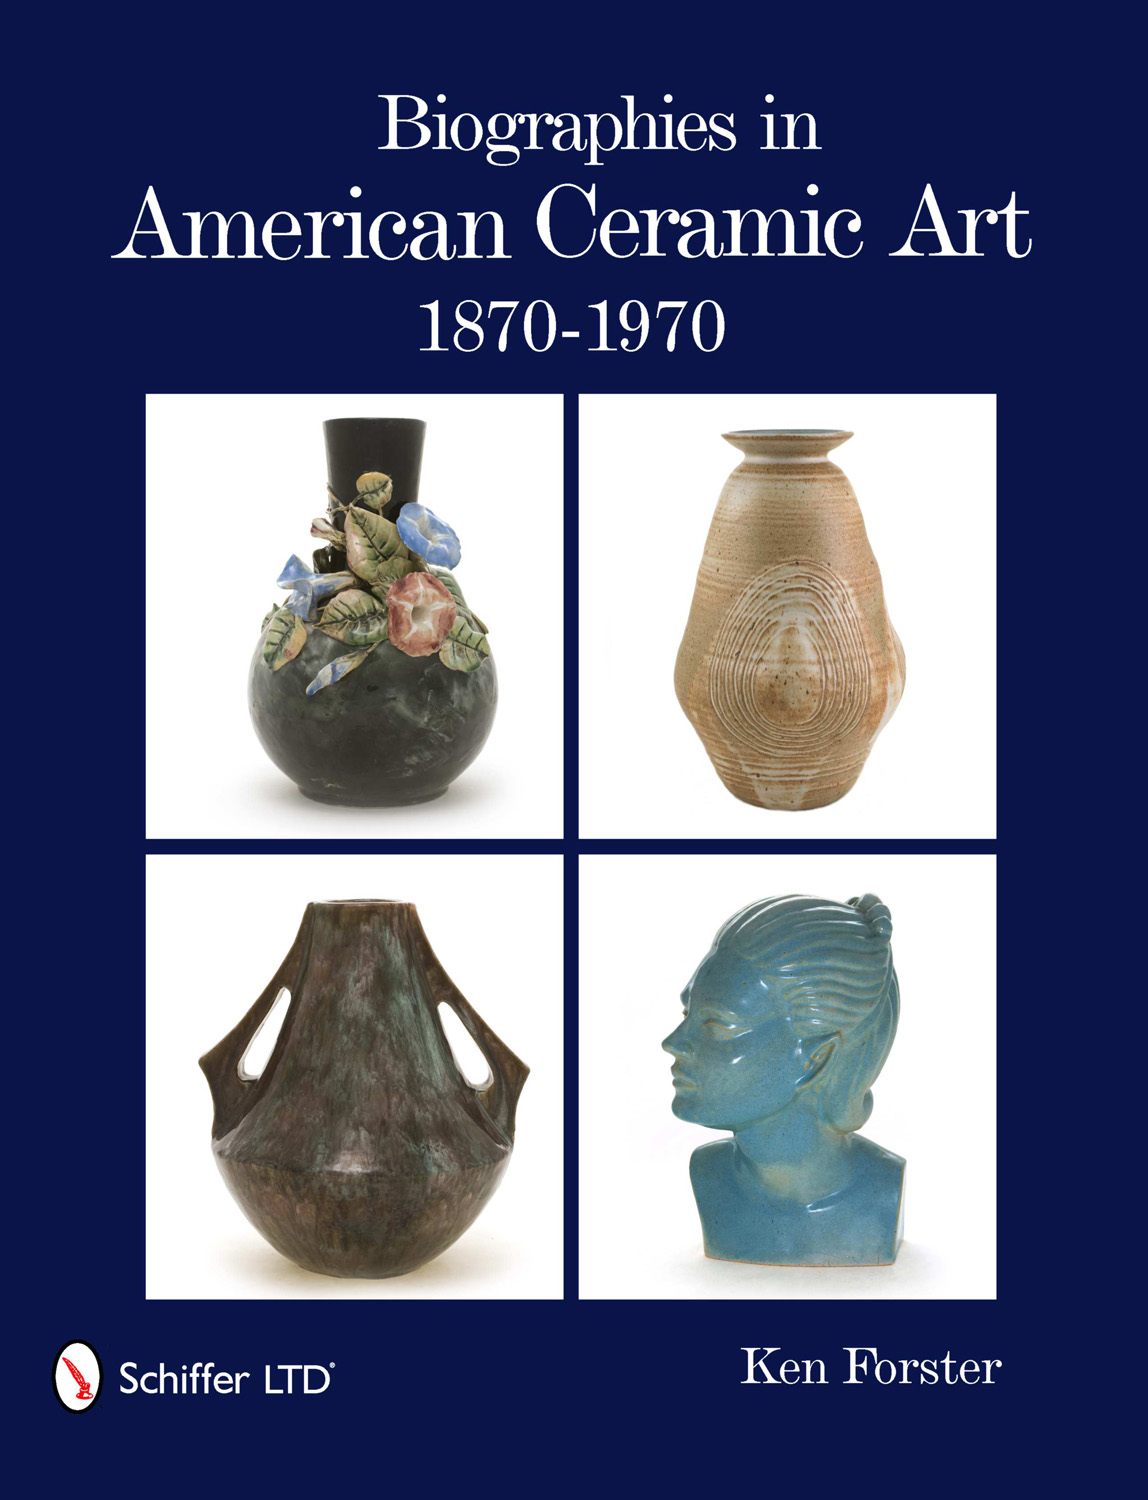 Biographies in American Ceramic Art: 1870-1970